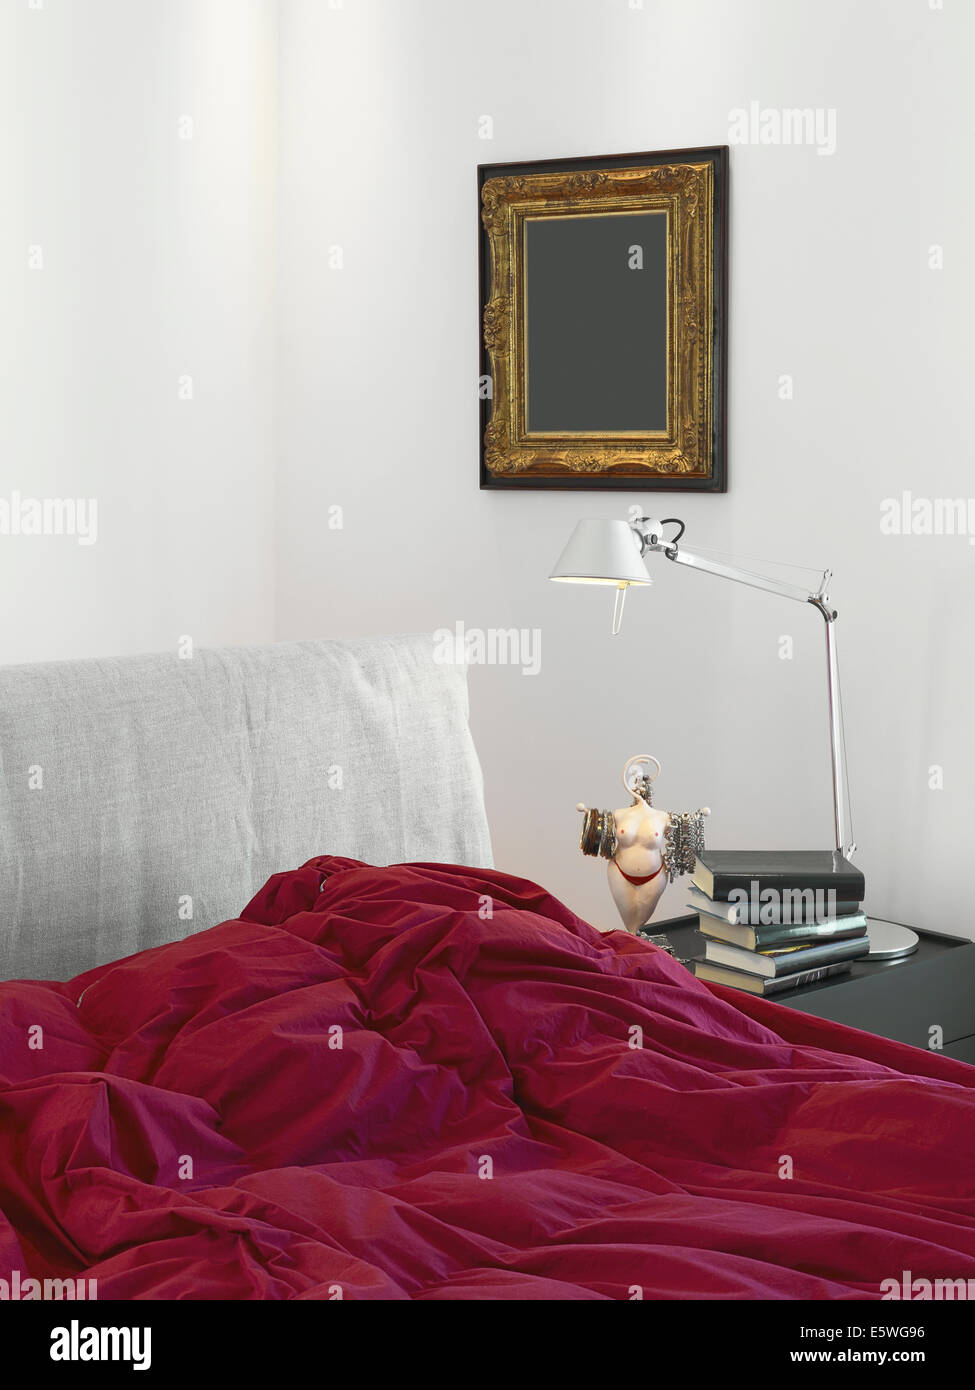 Dettaglio del letto con coperta di rosso in una moderna camera da letto con lampada da tavolo Foto Stock